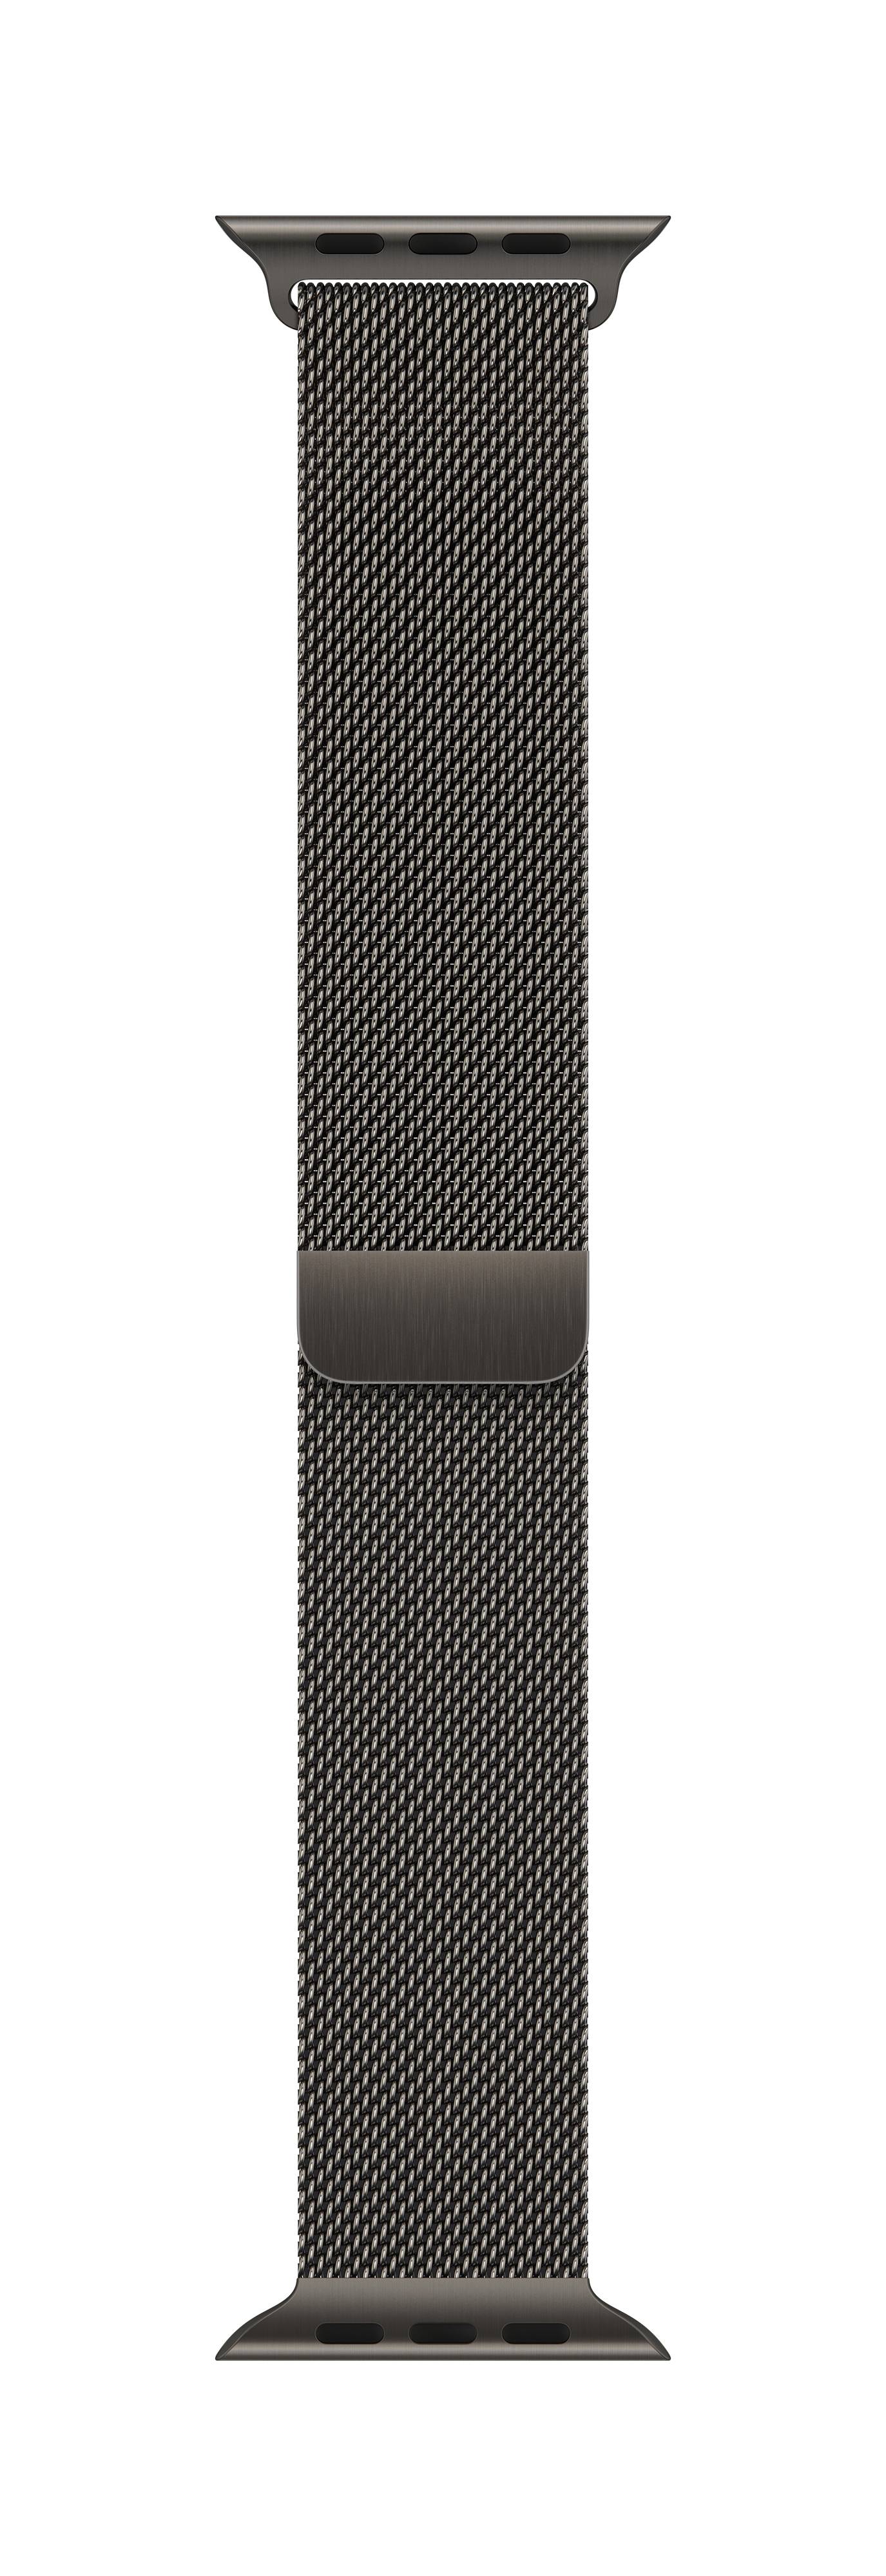 APPLE Milanaise Armband für Watch 45mm (graphit)